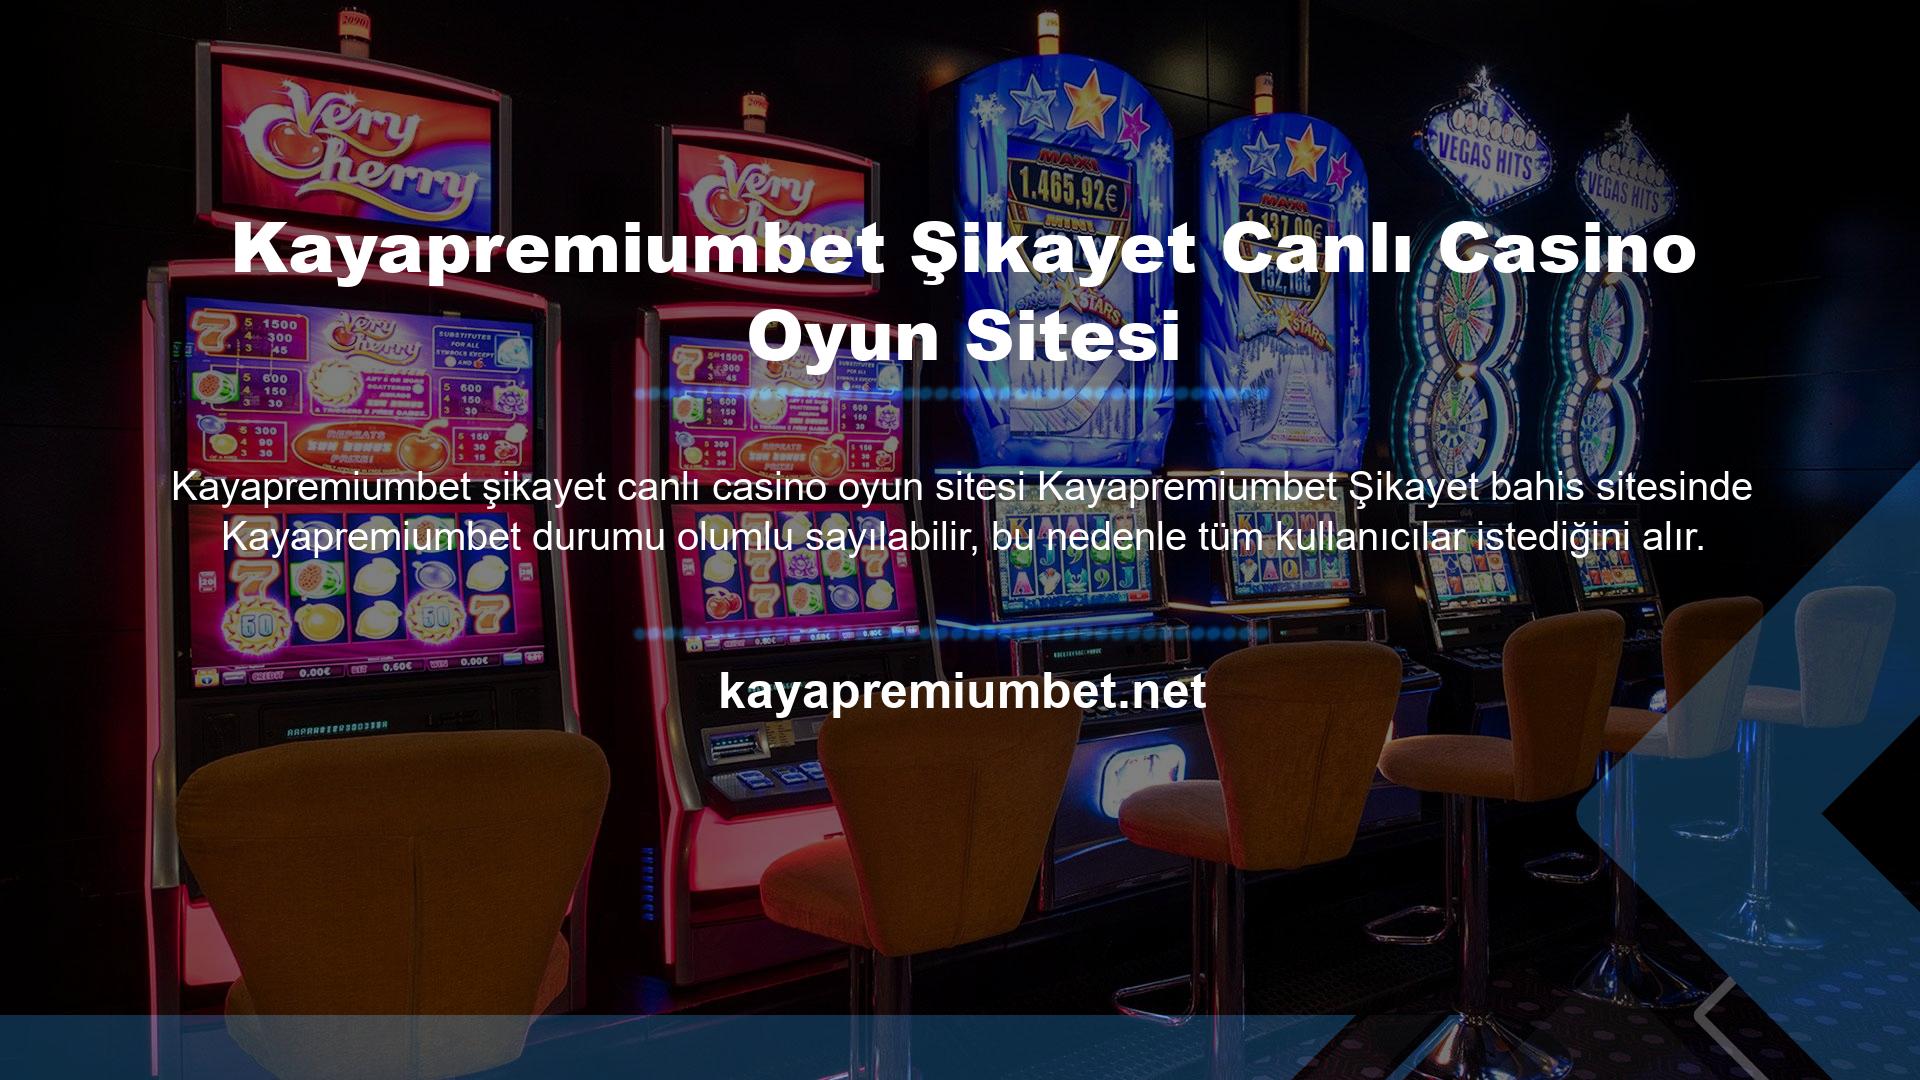 Kayapremiumbet canlı casino oyun sitesinin çekiciliği aynı zamanda insanların mevcut giriş adresleriyle aradıklarını alabilmeleri gibi erişim kolaylığını da desteklemesidir